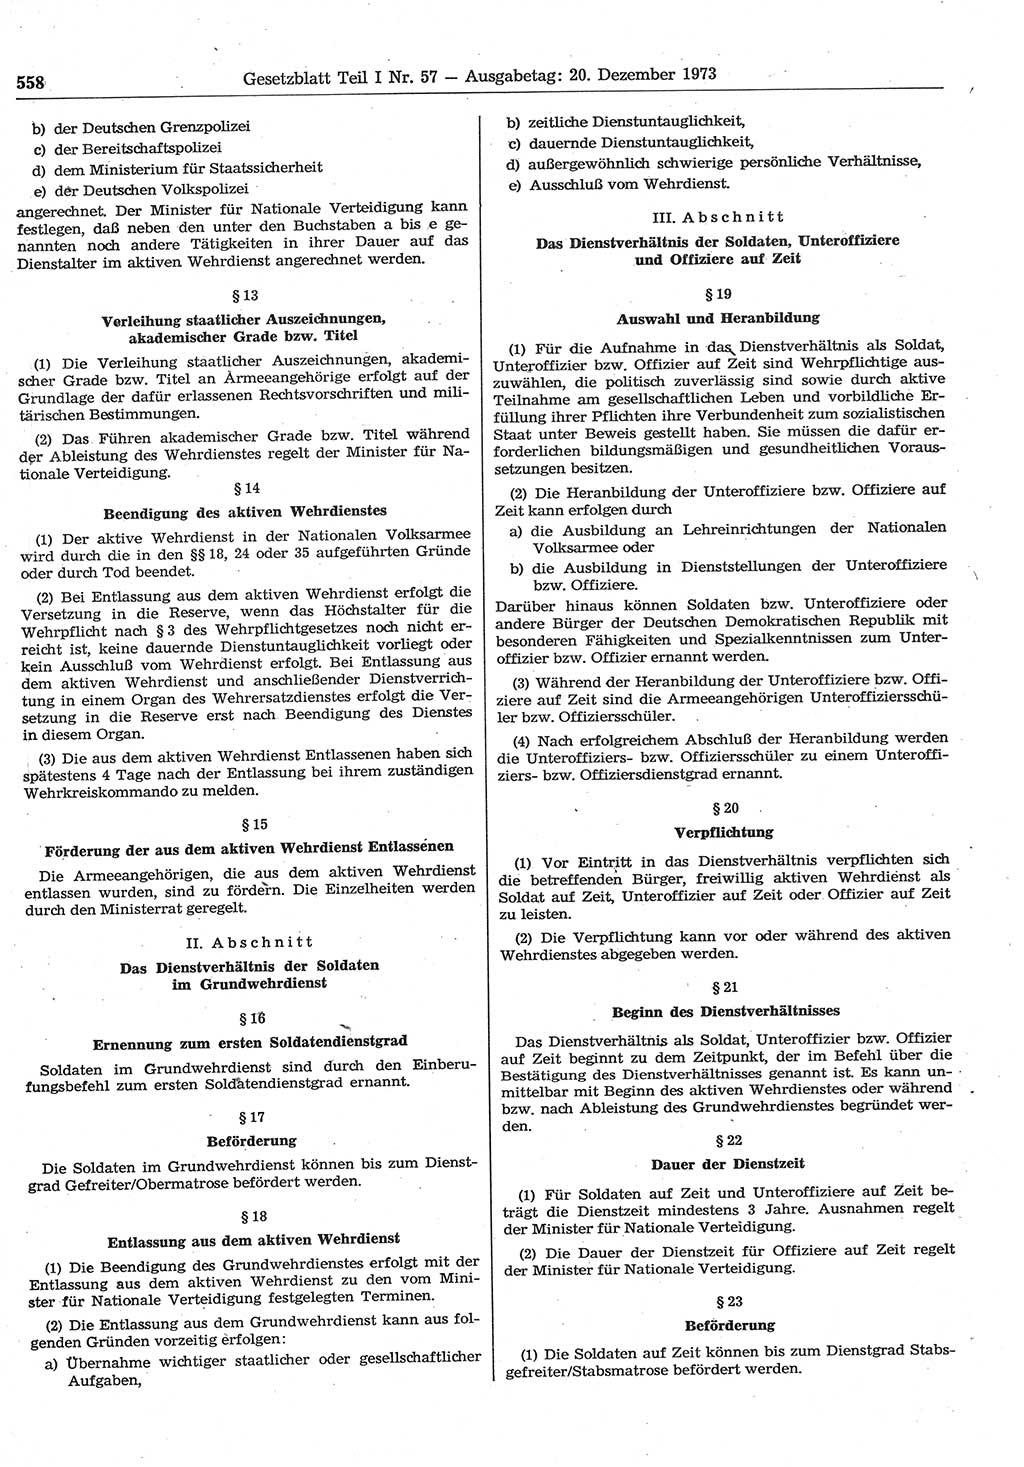 Gesetzblatt (GBl.) der Deutschen Demokratischen Republik (DDR) Teil Ⅰ 1973, Seite 558 (GBl. DDR Ⅰ 1973, S. 558)